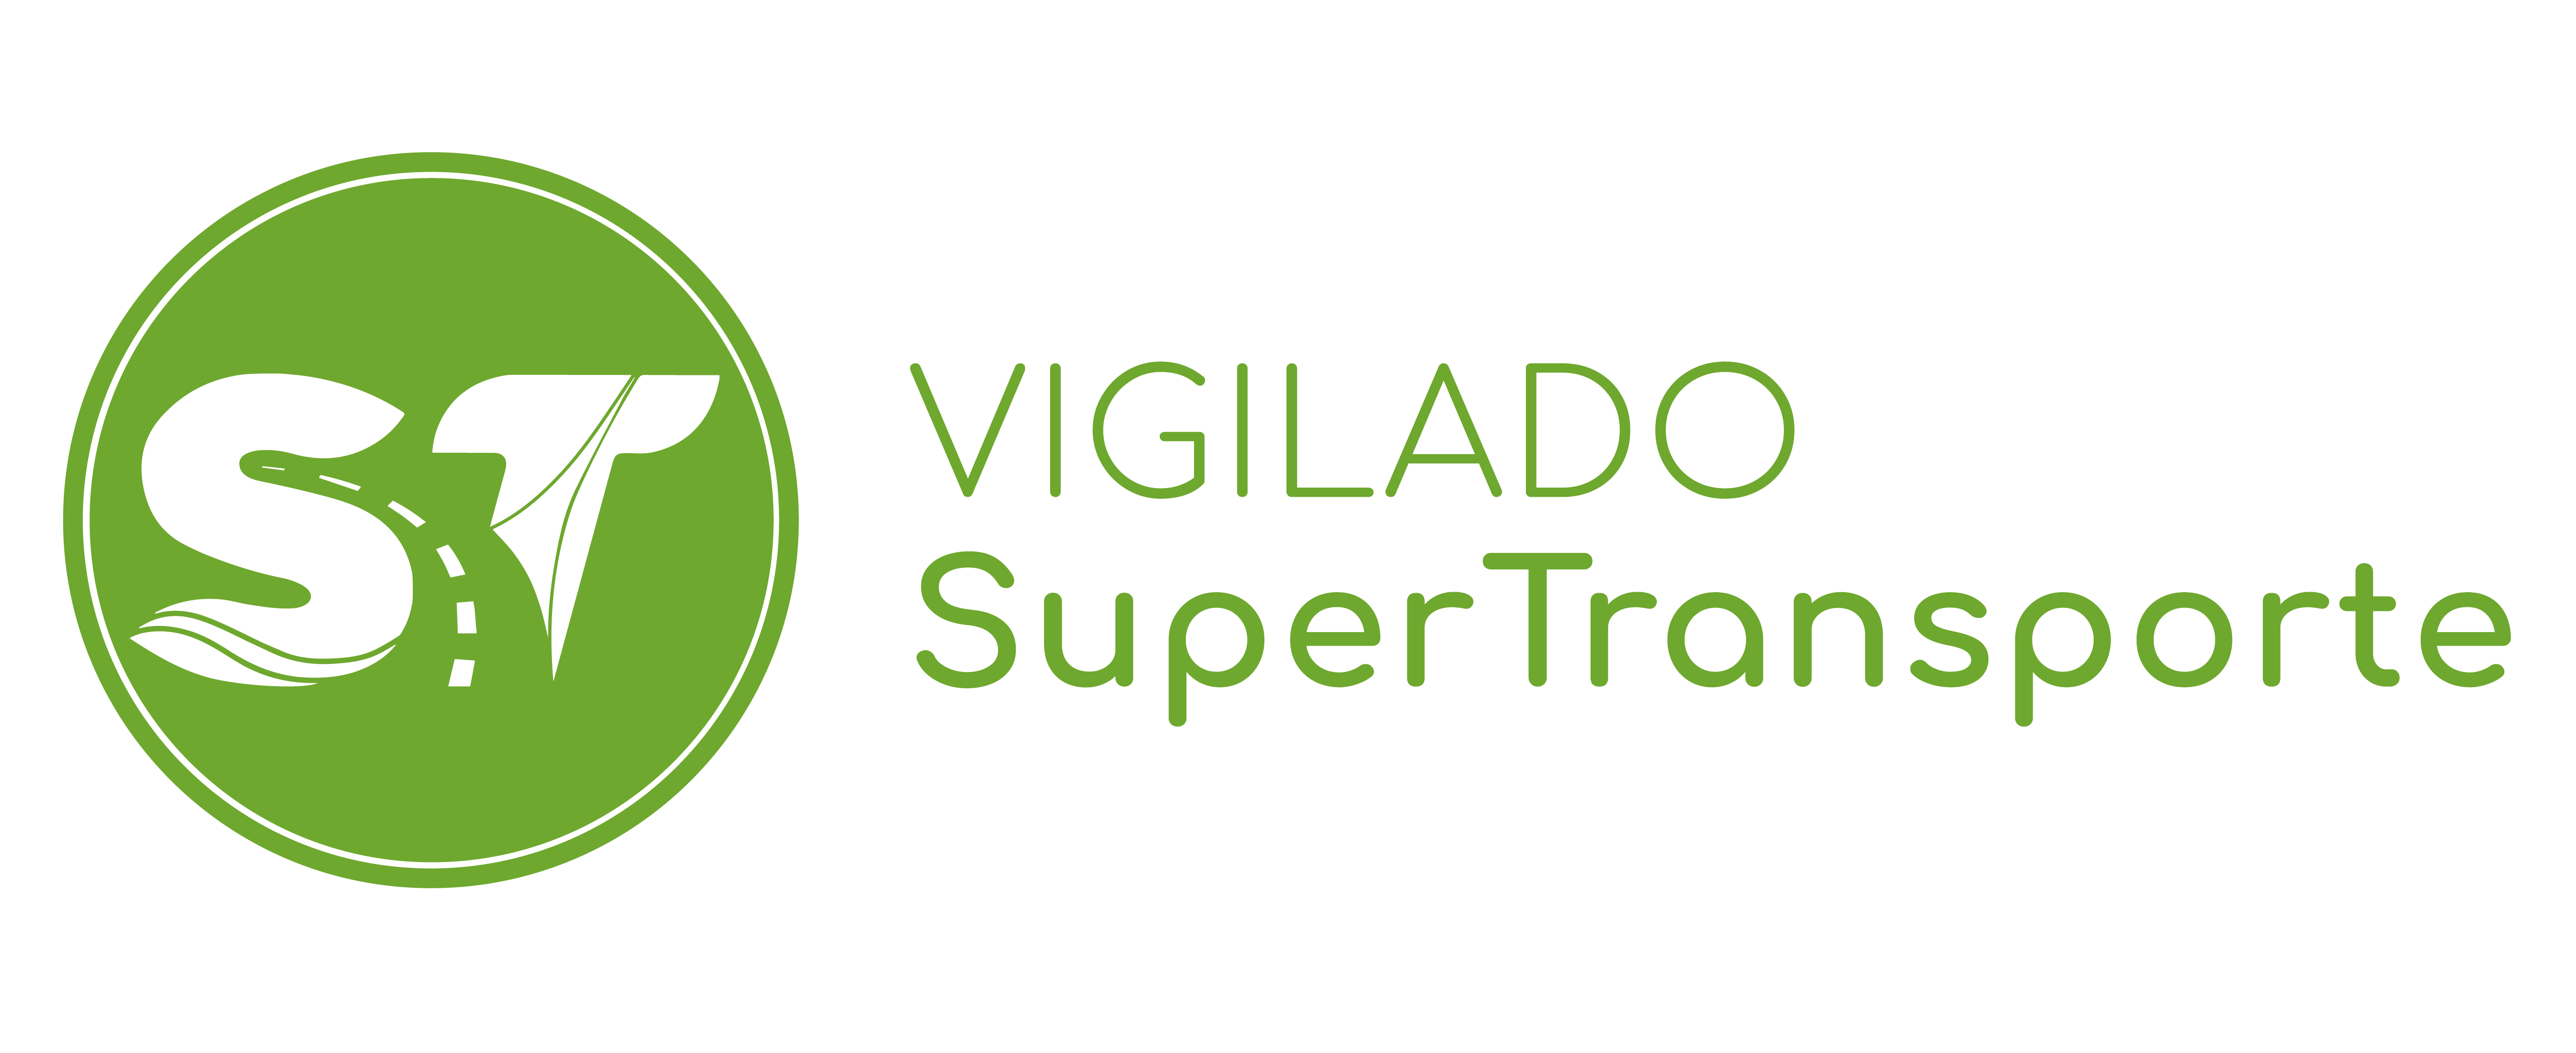 Logotipo Superintendencia de Transporte